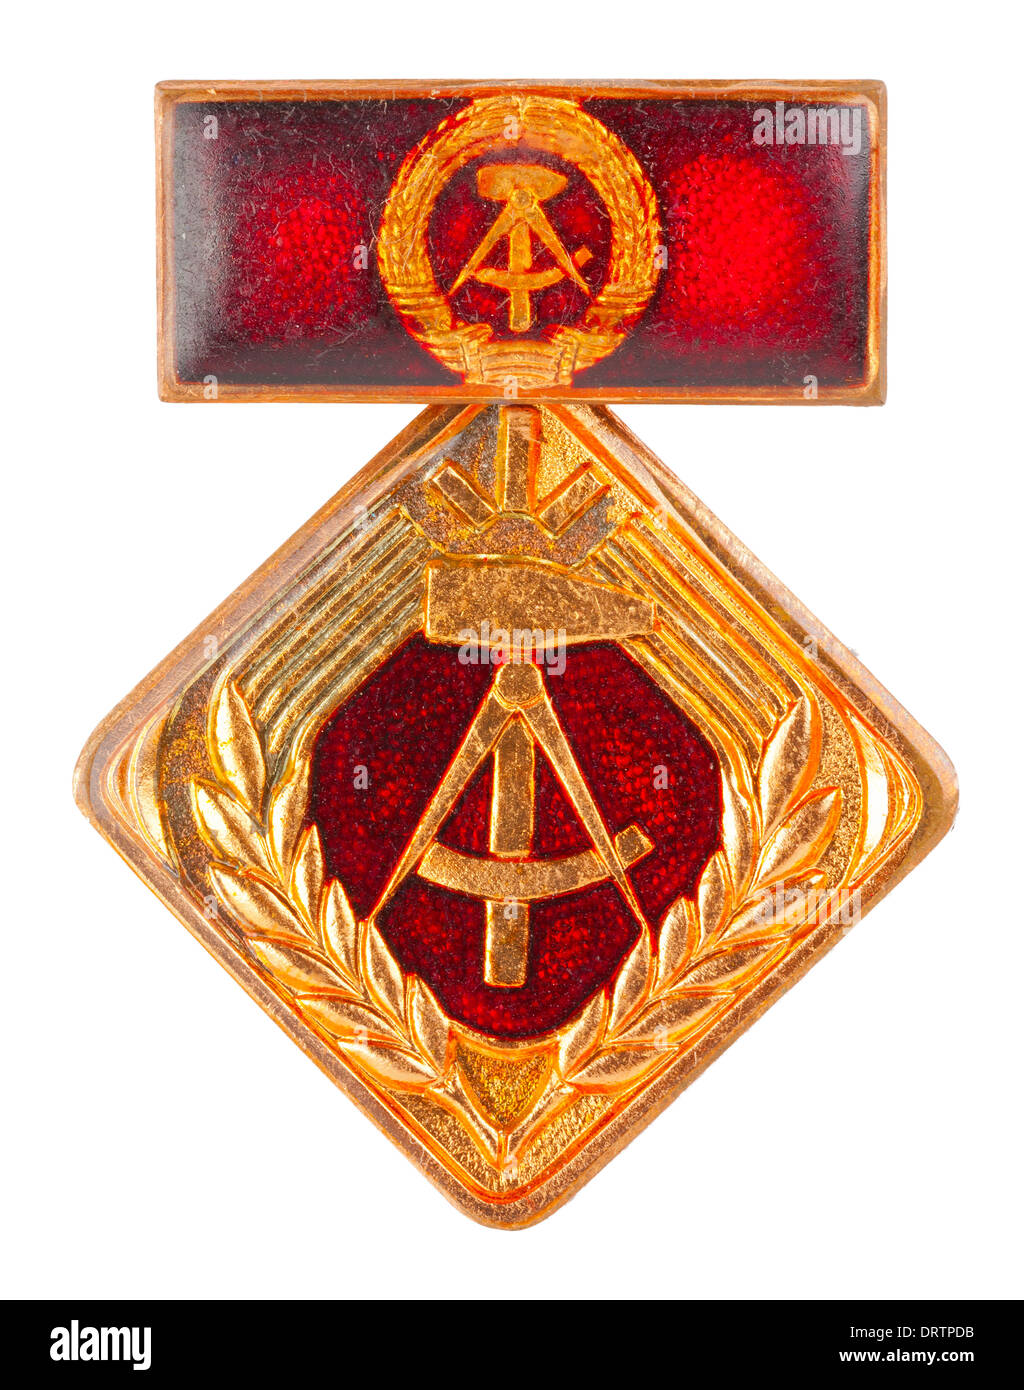 Medaille Kollektiv der Sozialistischen Arbeit 1973-1989 